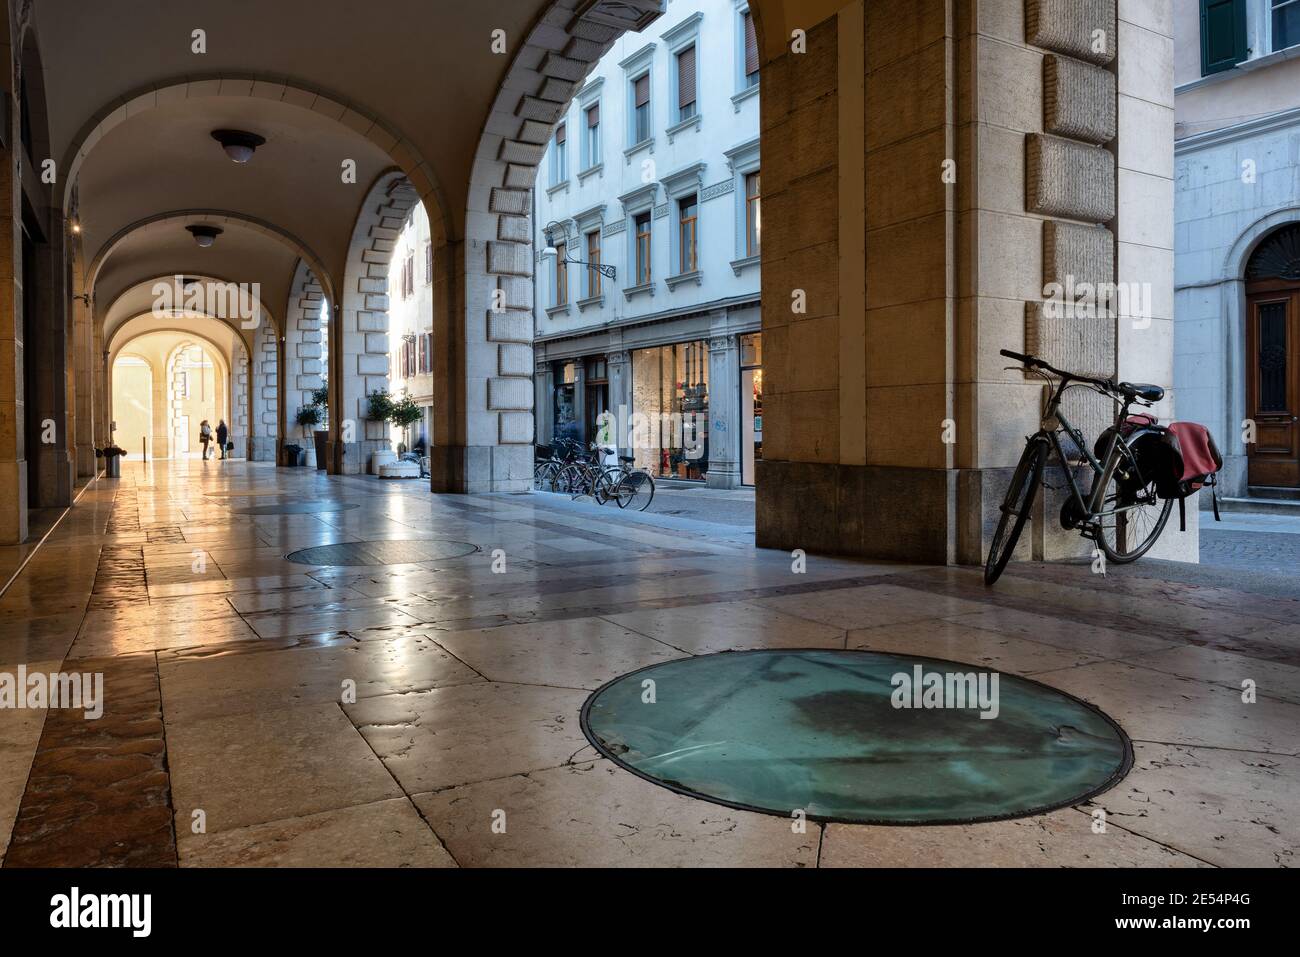 Schönes Beispiel eines italienischen Portikus mit glatten Marmorböden. Udine, Friaul Julisch Venetien, Italien. Stockfoto